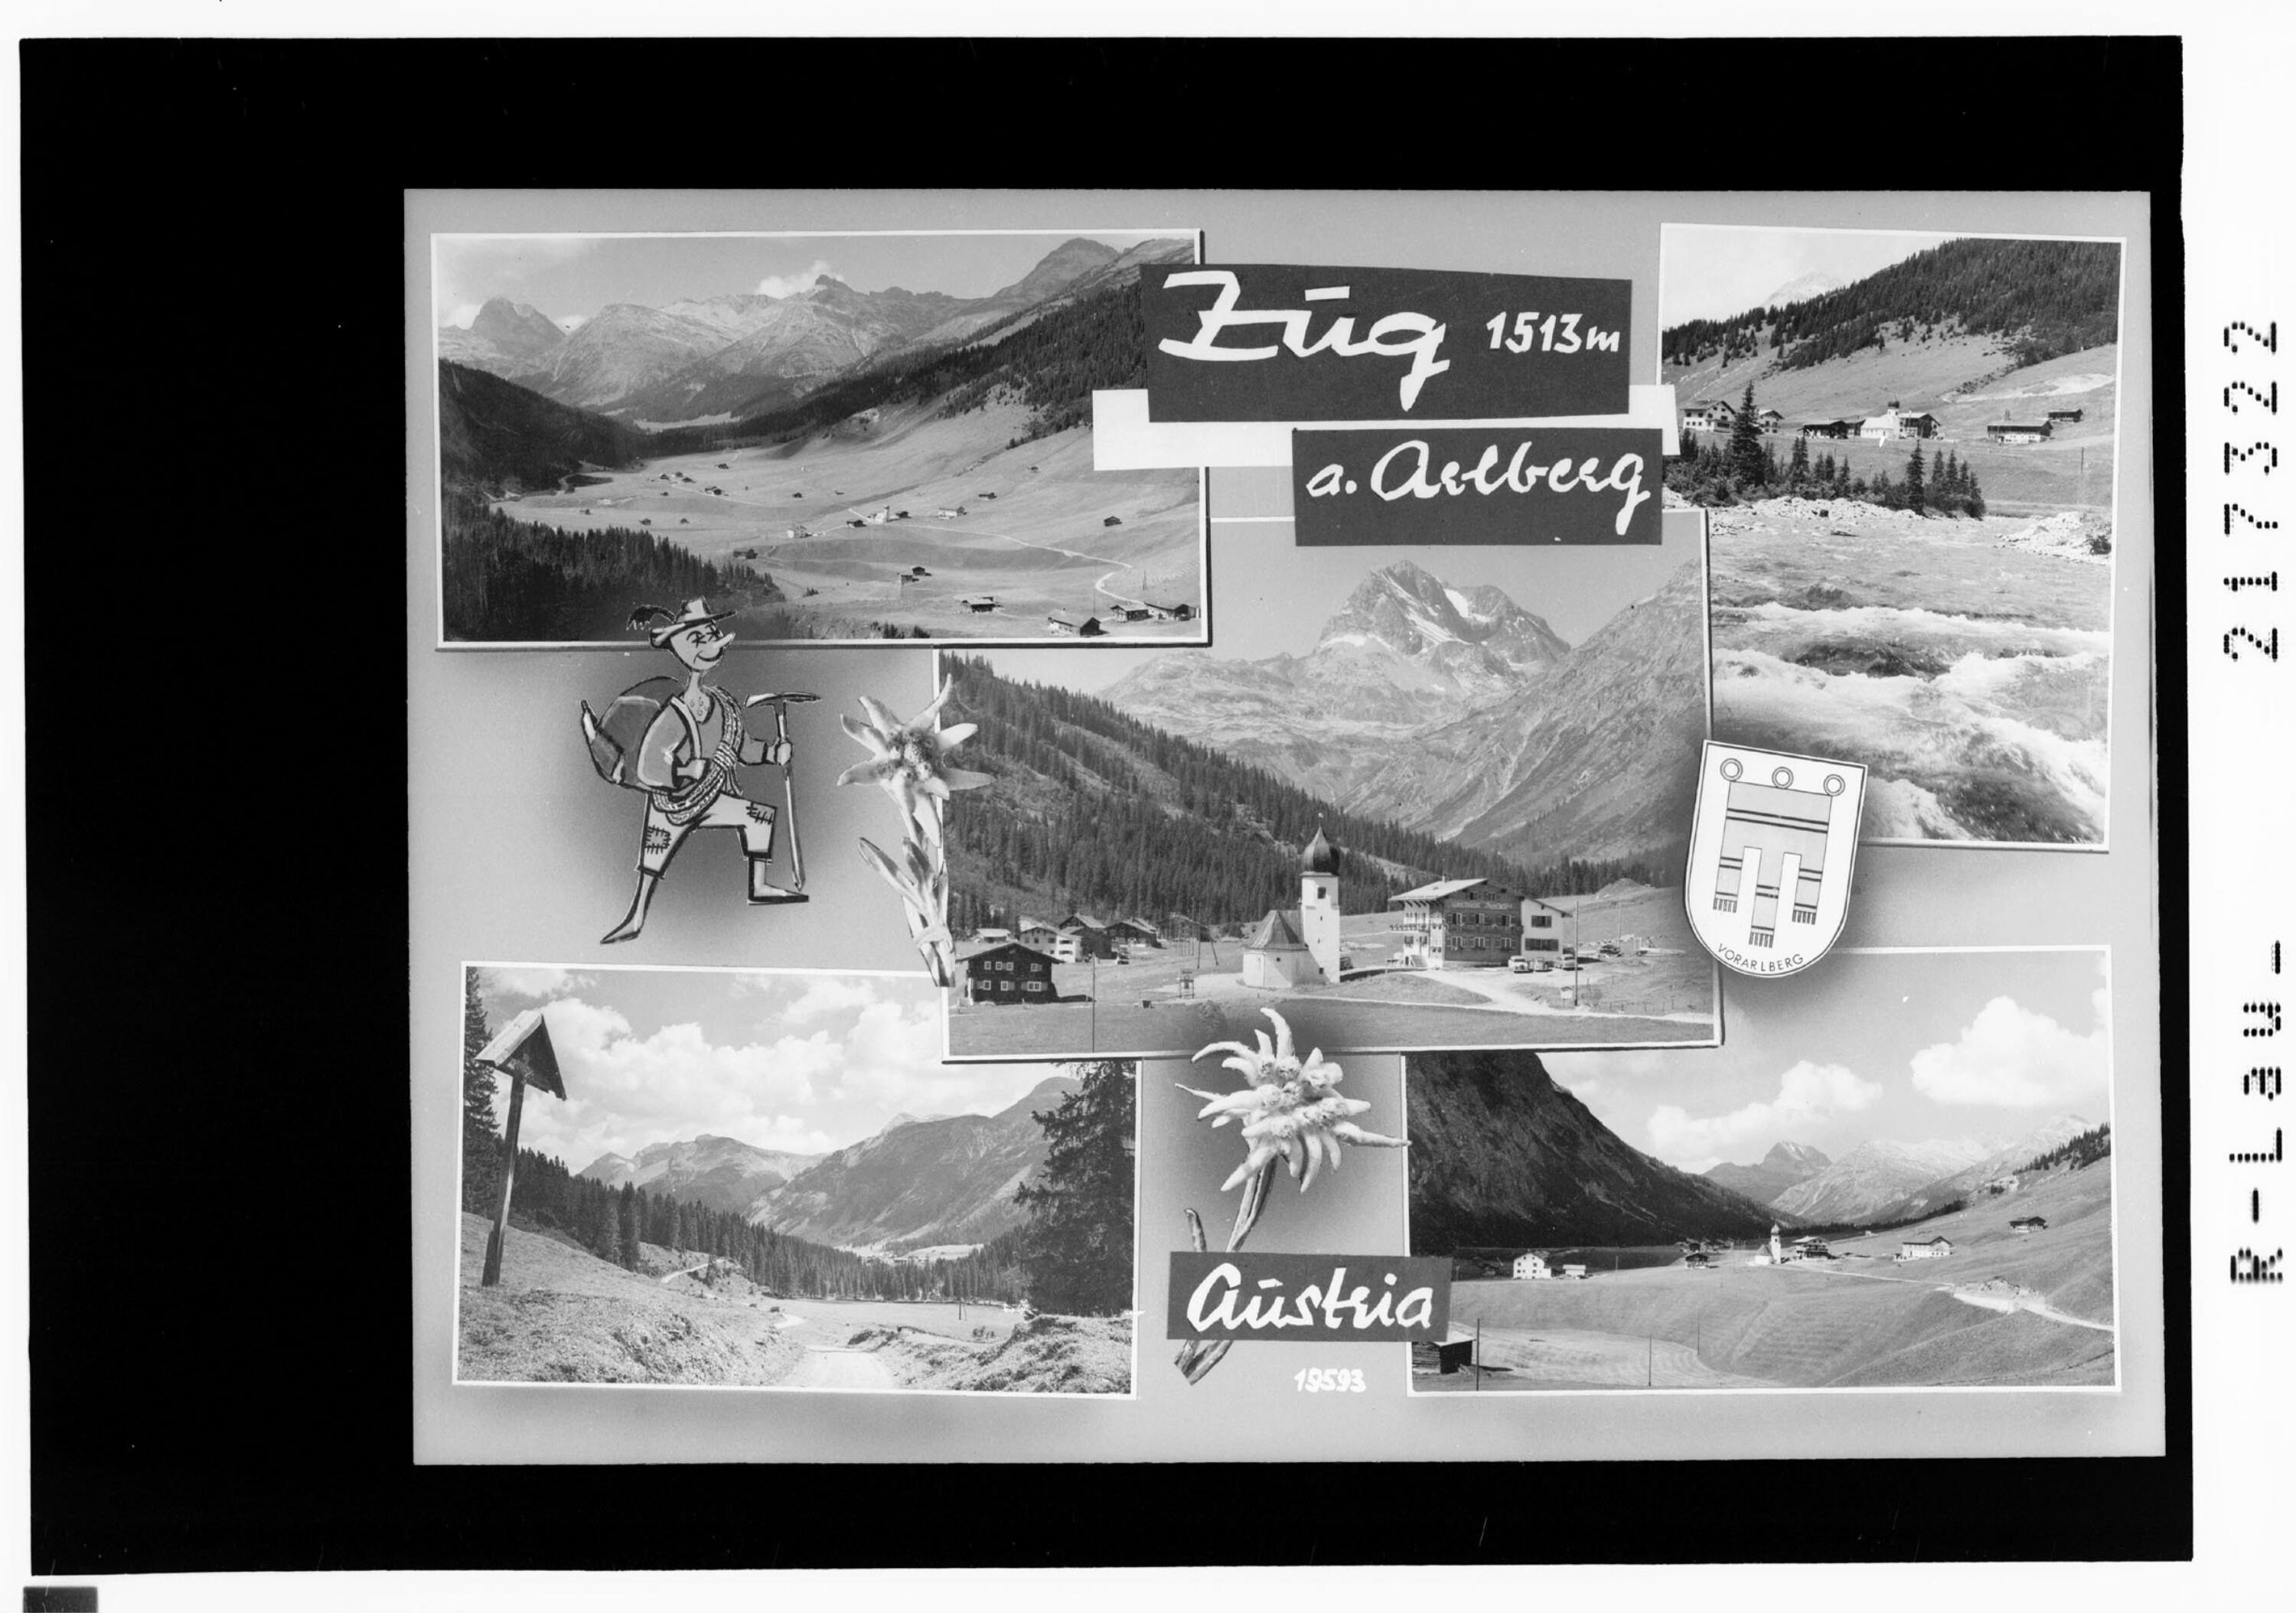 Zug 1513 m am Arlberg / Austria></div>


    <hr>
    <div class=